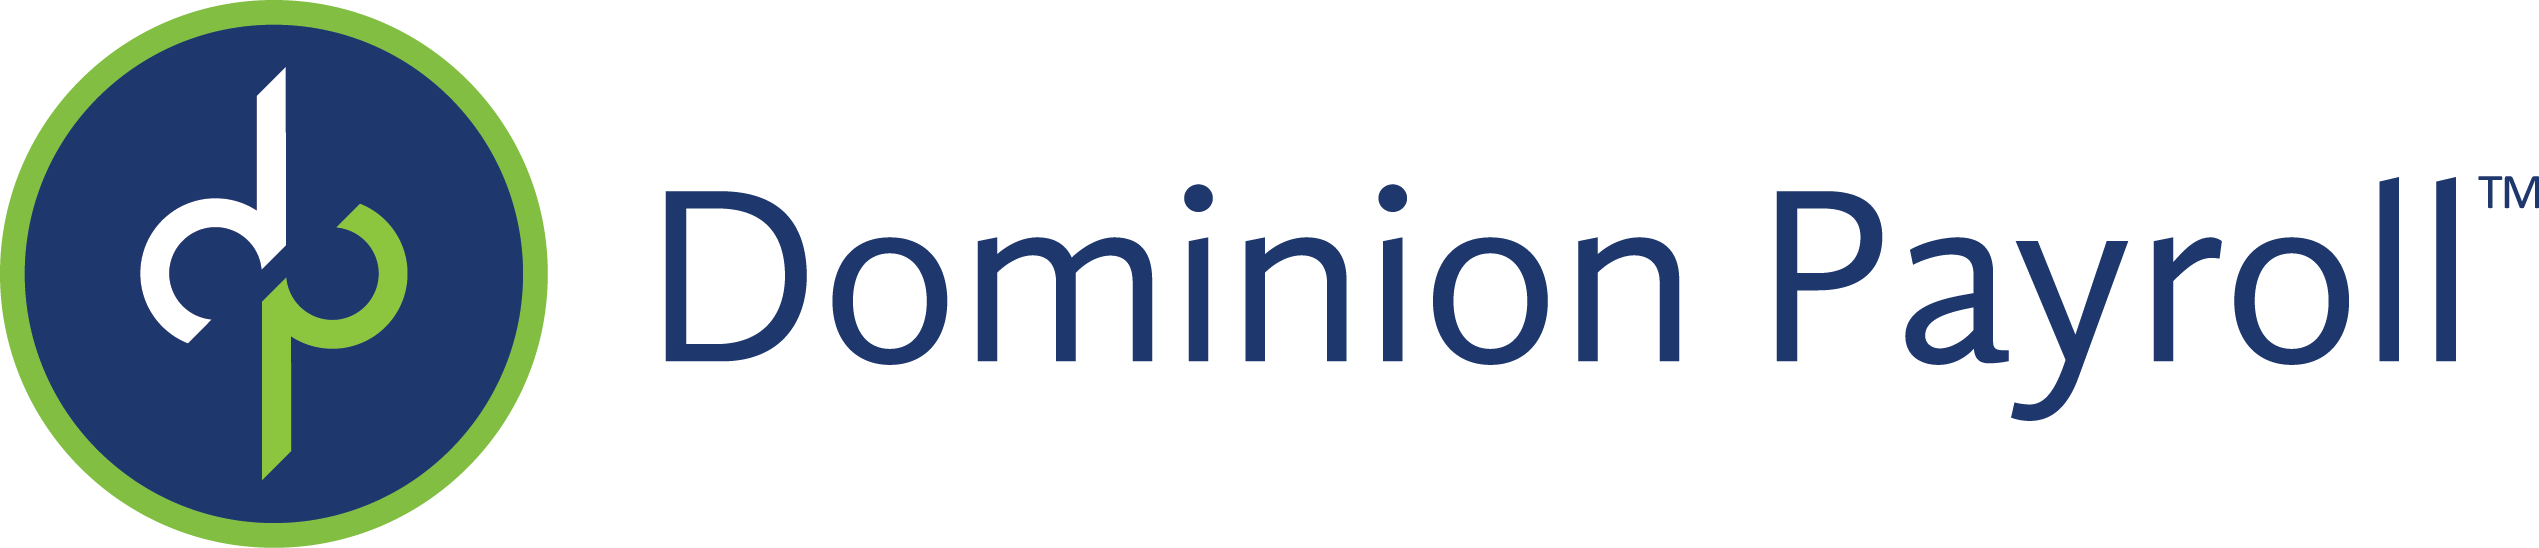 Dominion Payroll Company Logo